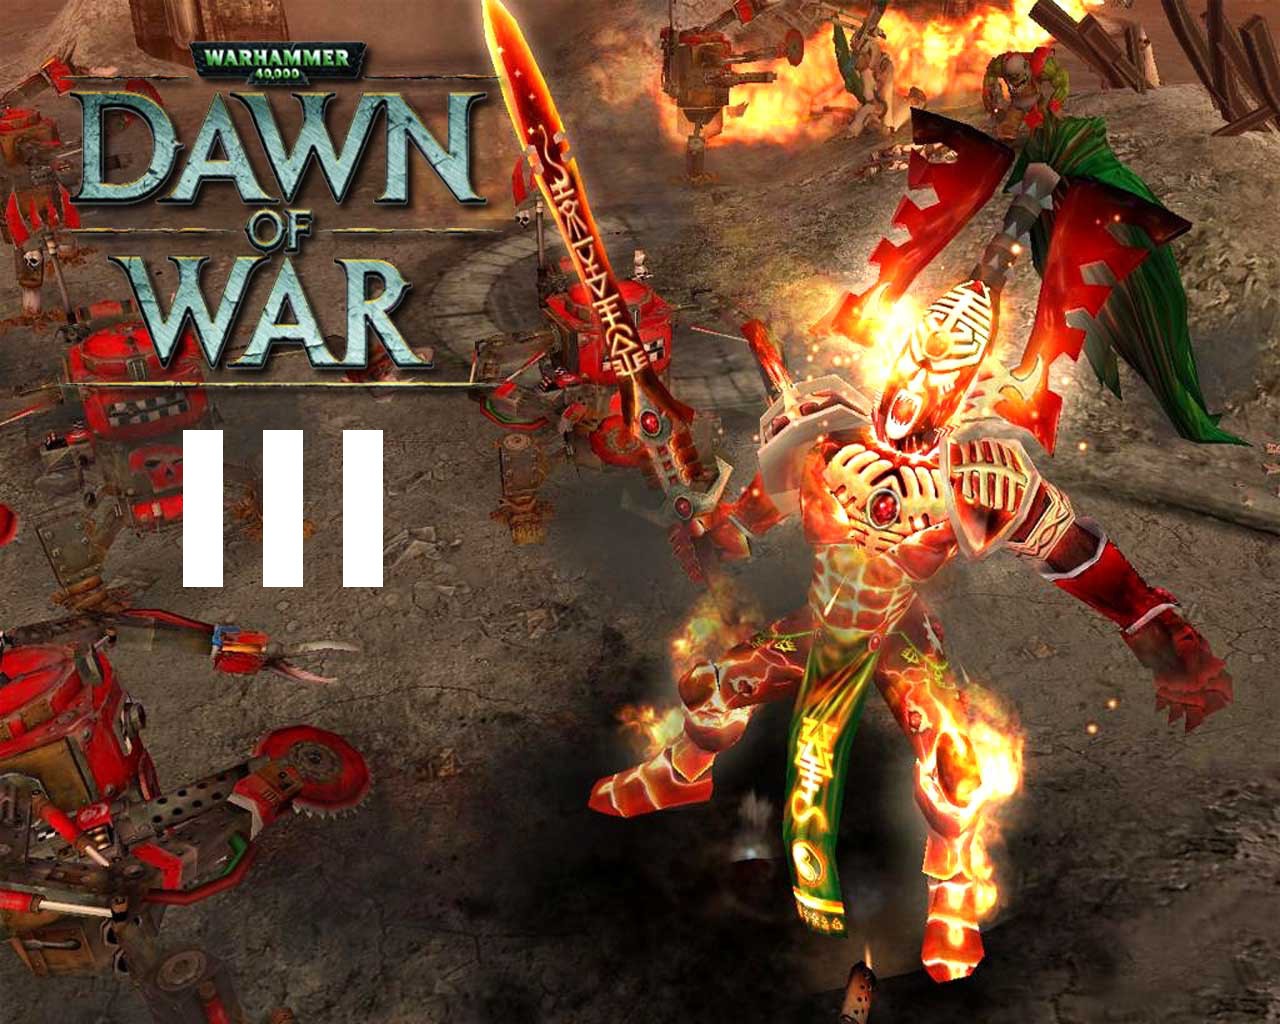 dawn of war 3 steam download free